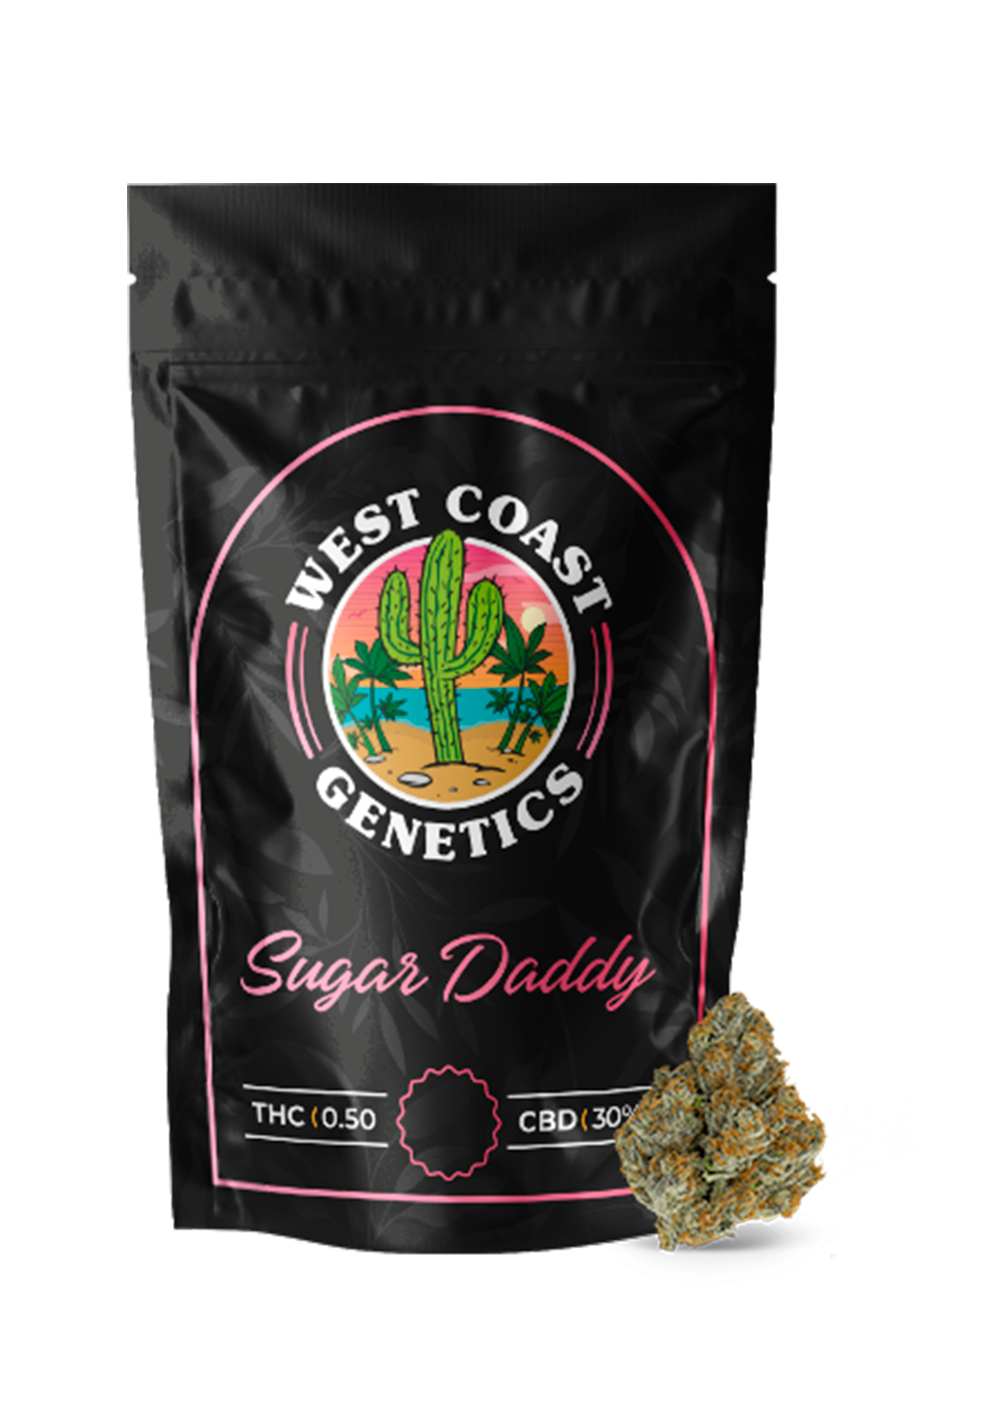 West Coast Genetics – Sugar Daddy